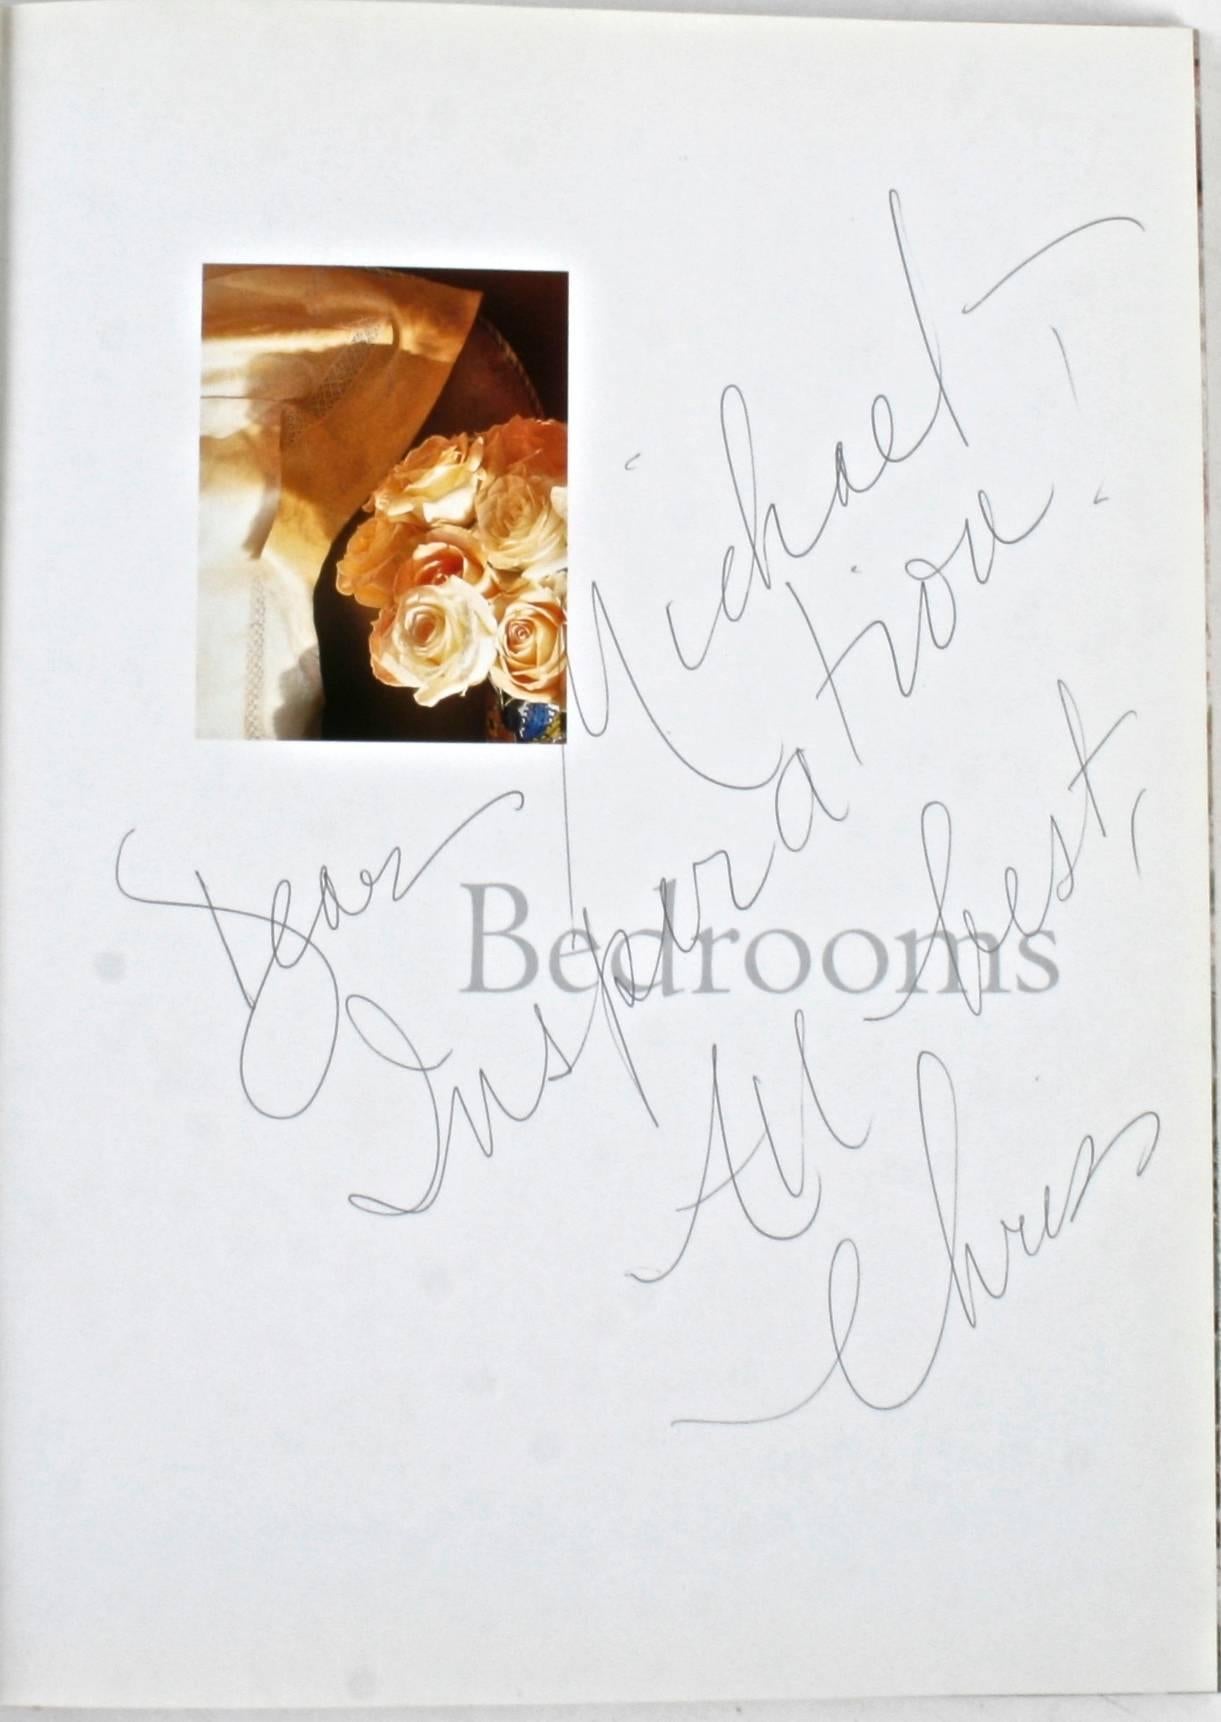 Chambres à coucher : Créer la chambre élégante et confortable de vos rêves par Chris Casson Madden. Clarkson Potter, 2001. Signée et inscrite, première édition reliée avec jaquette. 